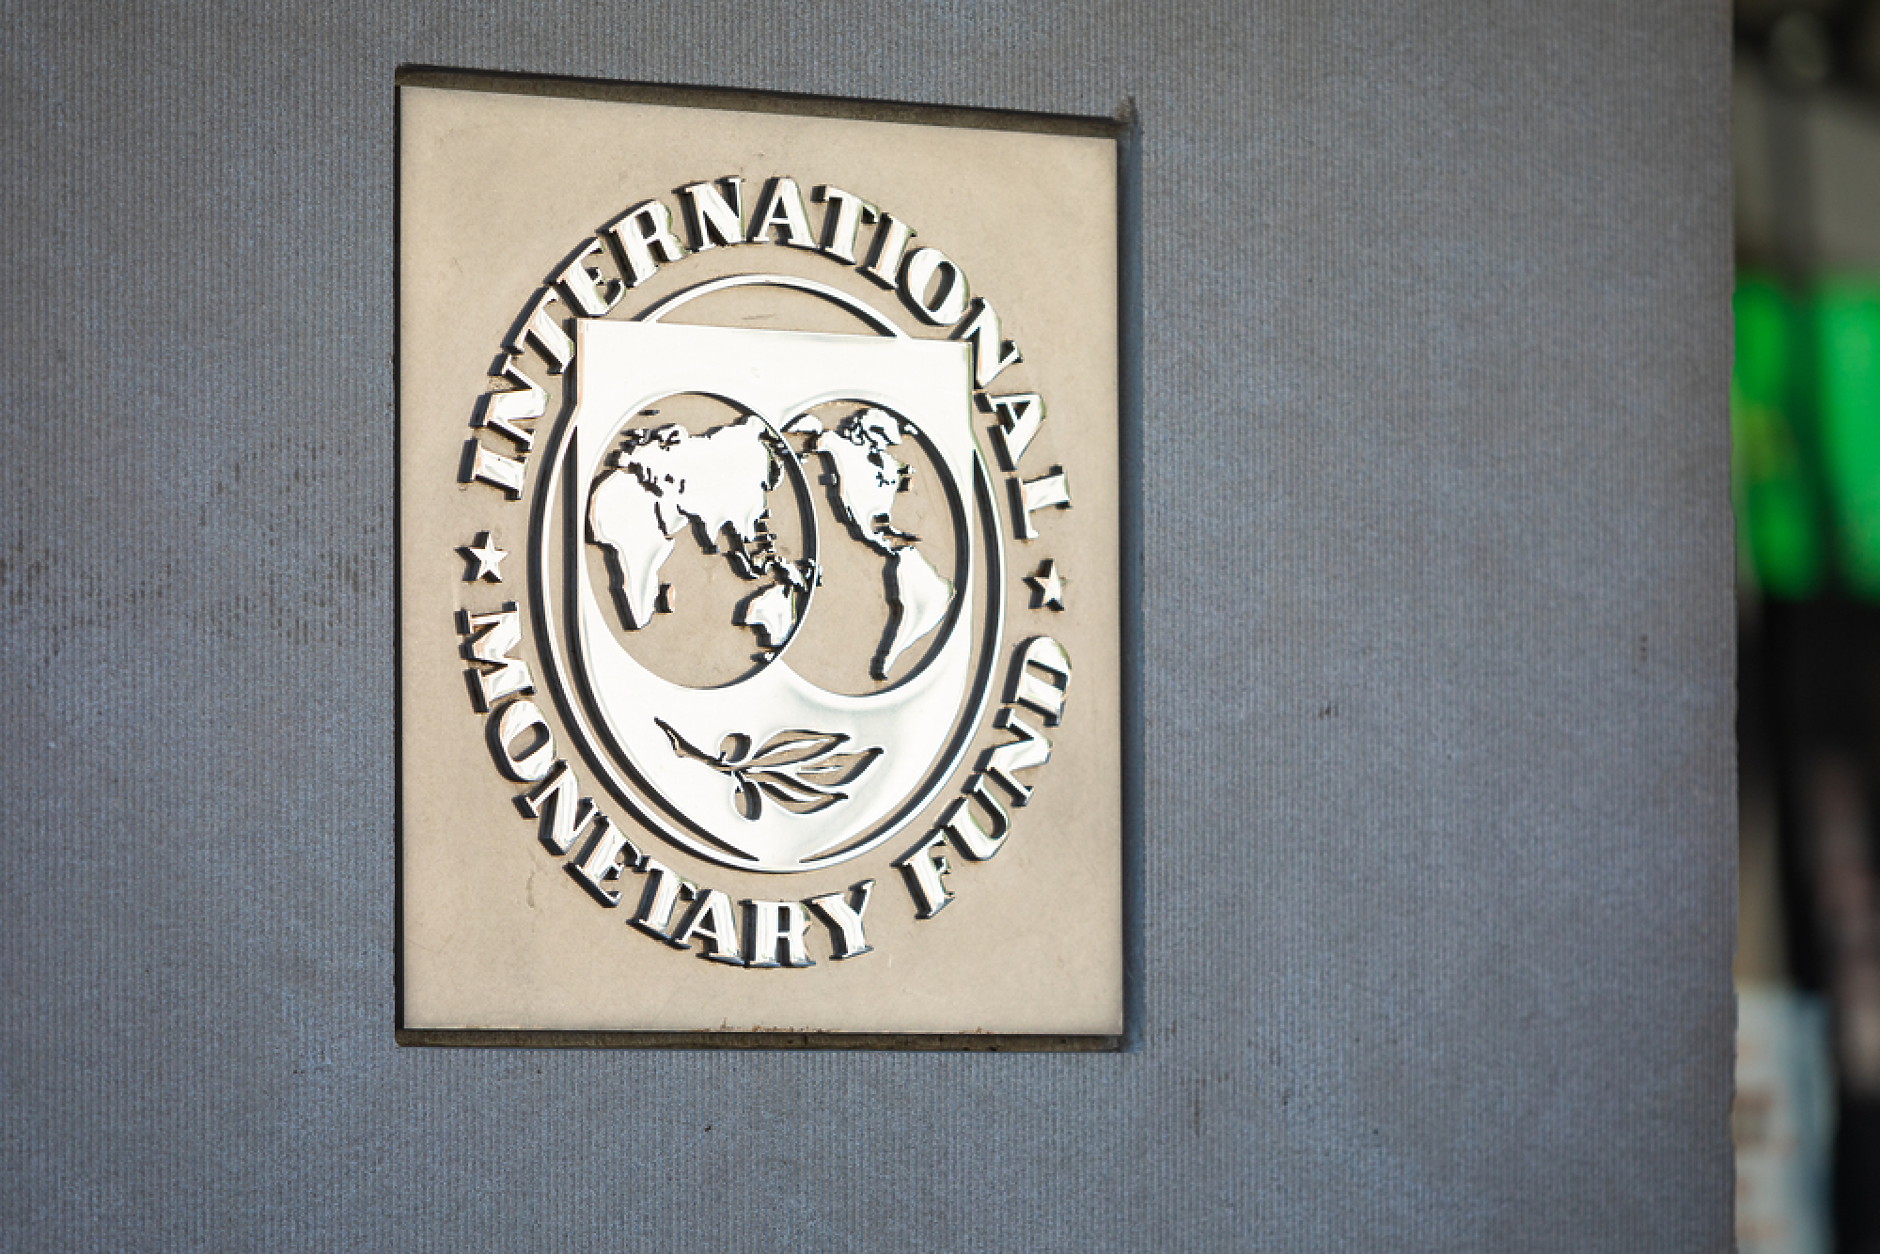 МВФ: САЩ трябва да поддържат отворена търговия и да работят с Китай за разрешаване на споровете